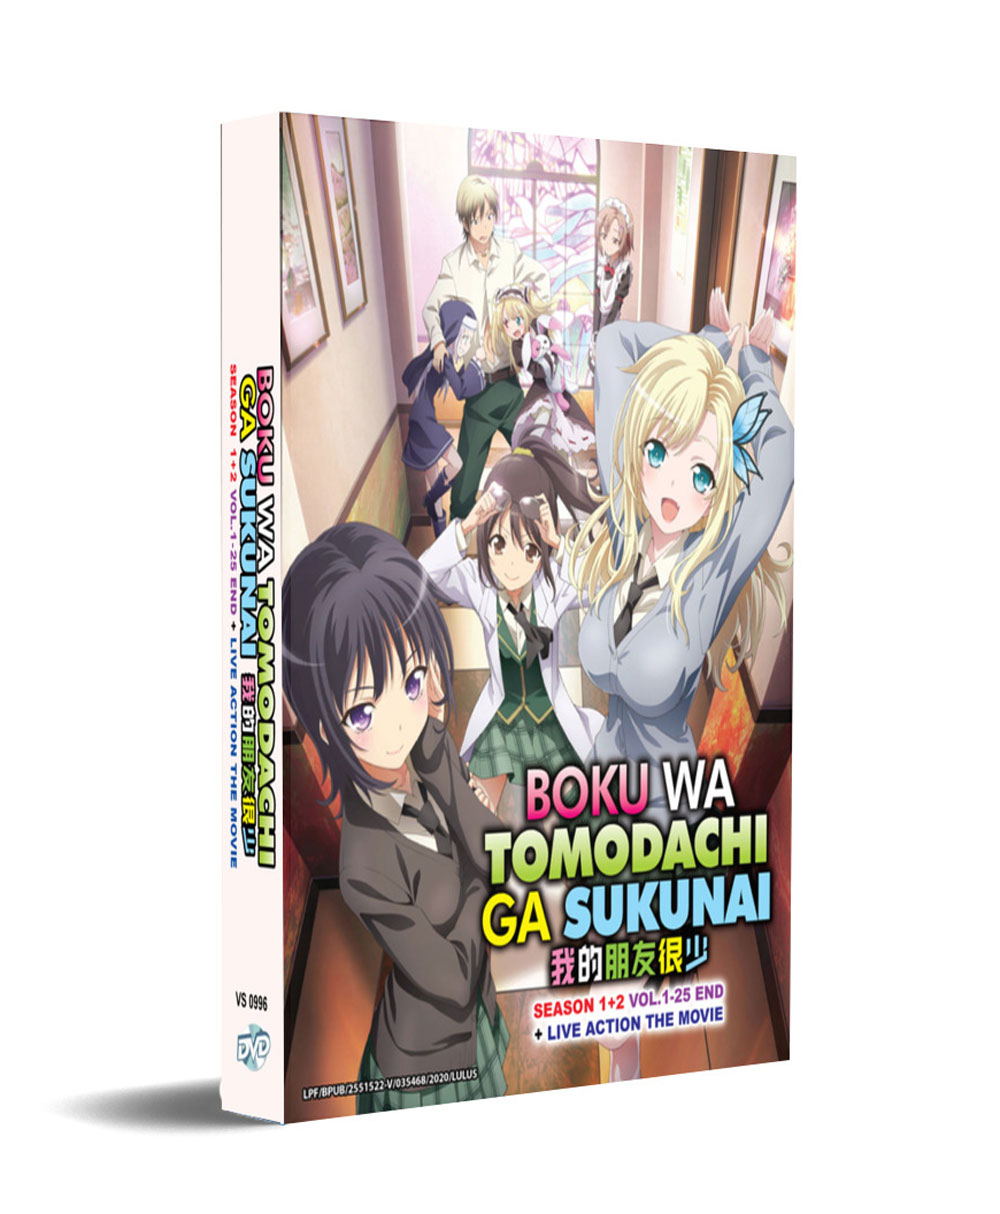 Boku wa Tomodachi ga Sukunai Season 1+2 + Live Action Movie (DVD) (2011-2014) Anime